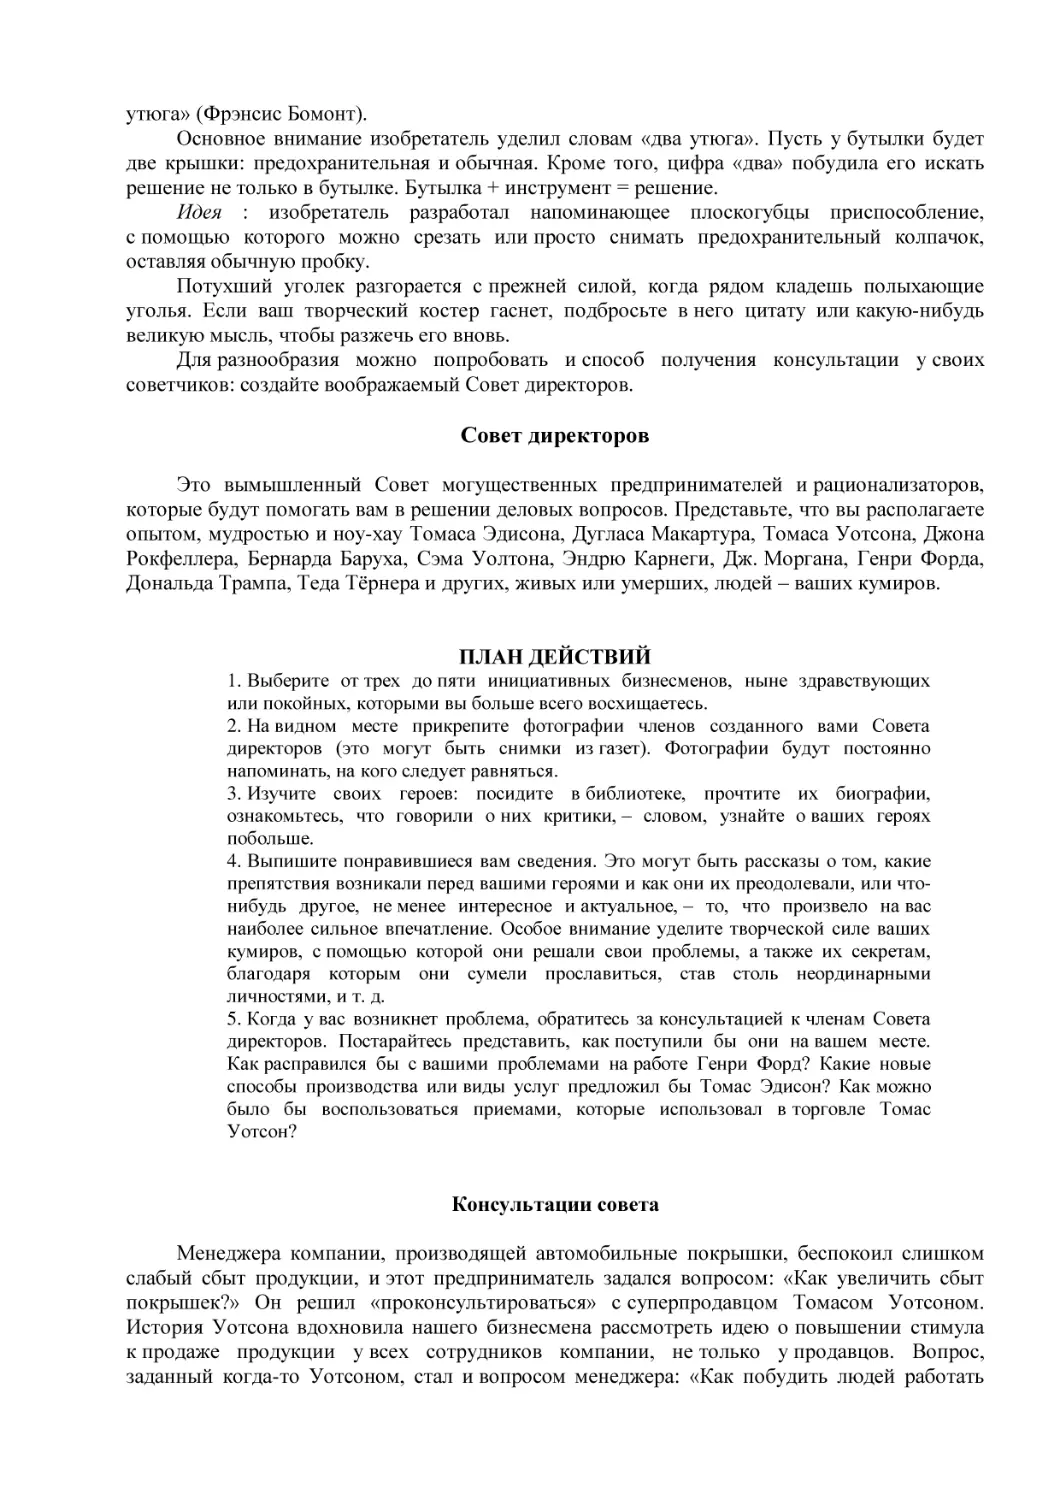 Совет директоров
ПЛАН ДЕЙСТВИЙ
Консультации совета